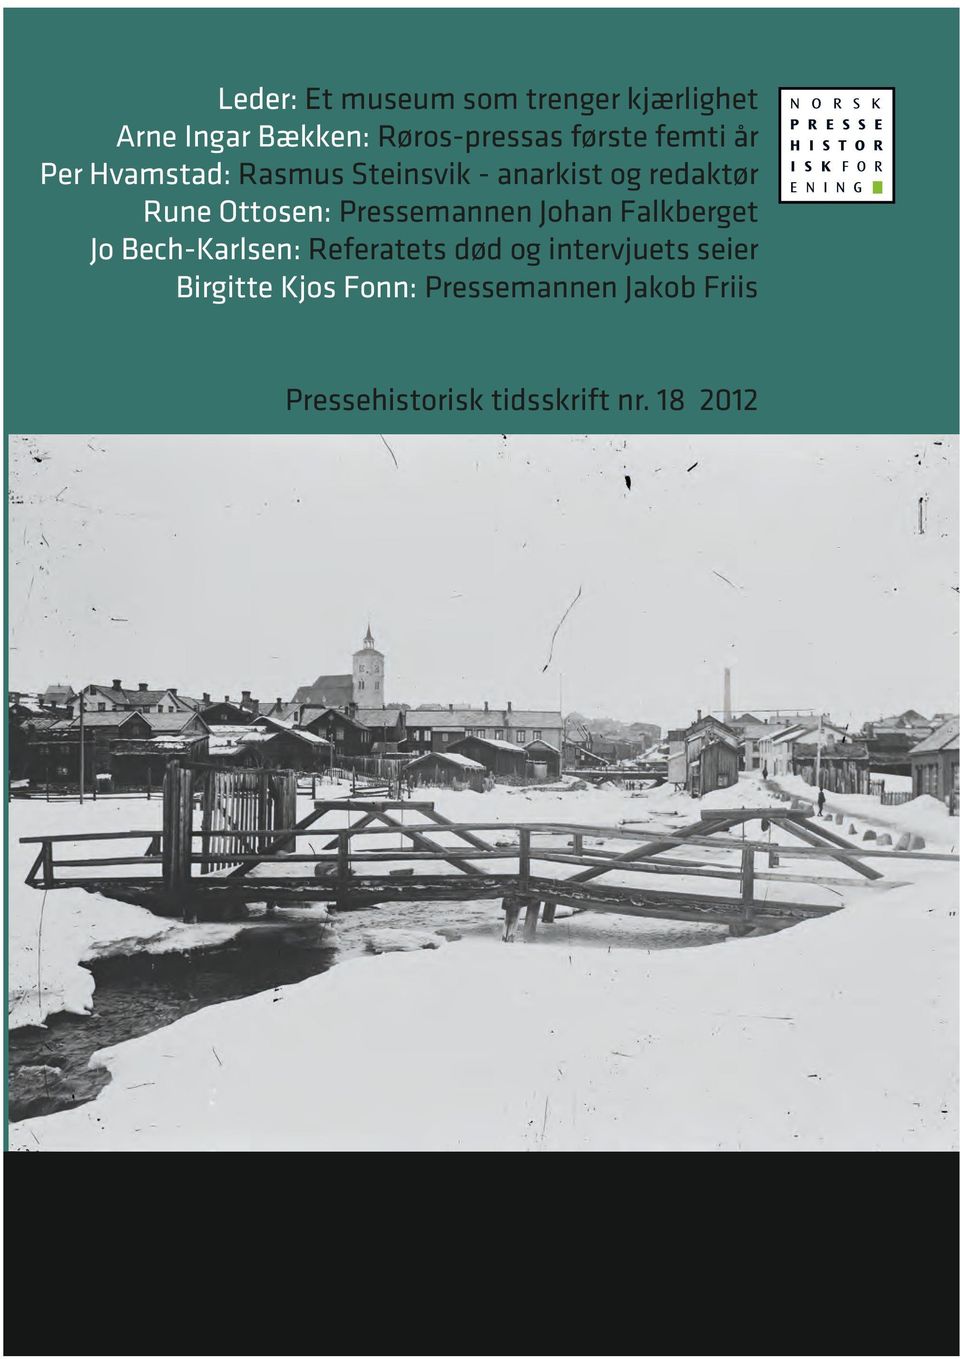 Her skriver Per Hvamstad om anarkisten og redaktøren Rasmus Steinsvik som skapte stormfulle måneder i Fjeld-Ljom. Rune Ottosen presenterer Johan Falkberget som journalist.